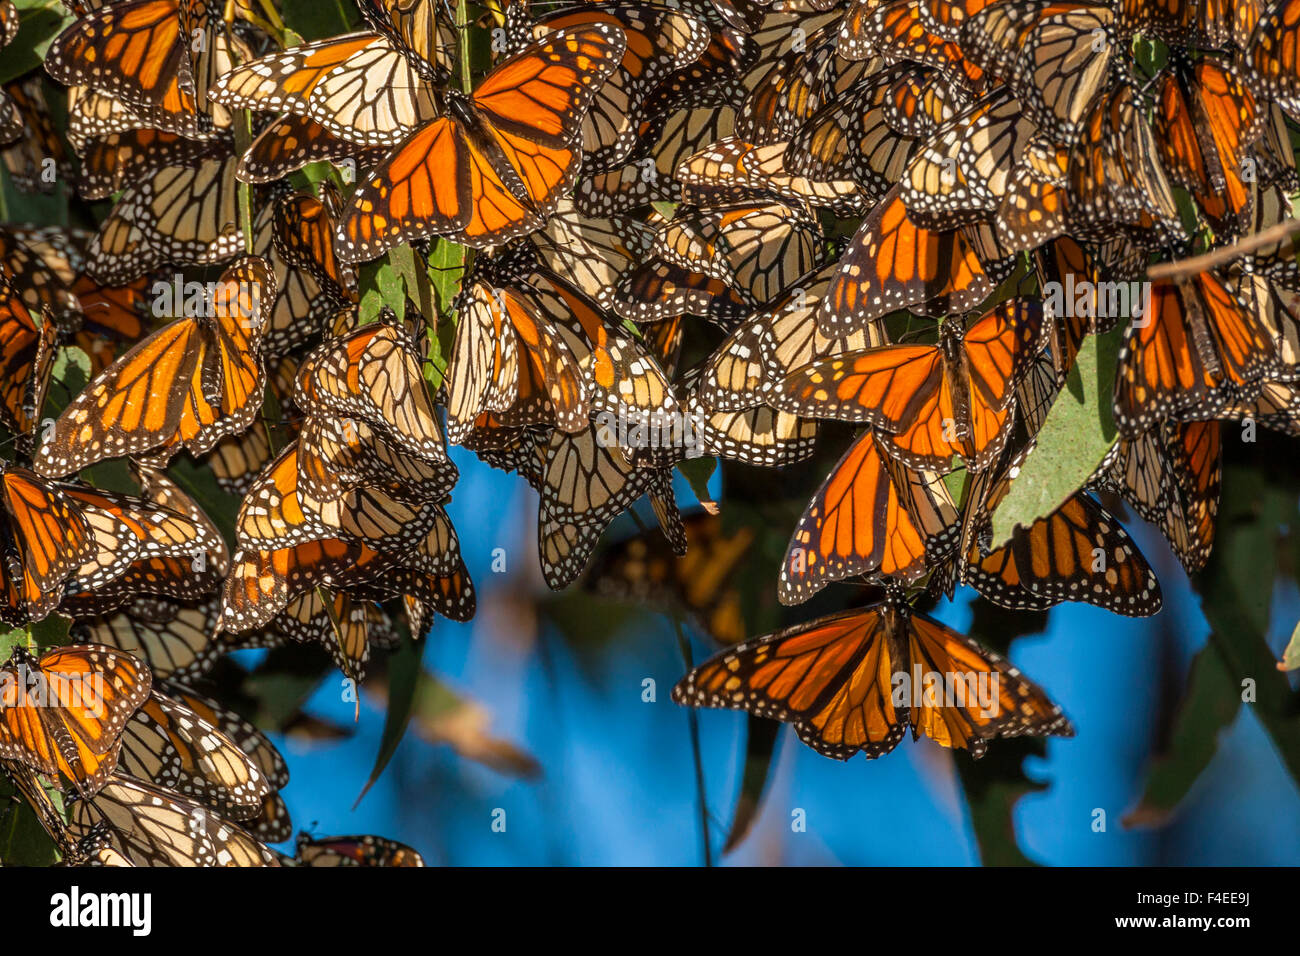 Stati Uniti, California, Pismo Beach. La migrazione di farfalle monarca si aggrappano alle foglie. Credito come: Cathy e Gordon Illg Jaynes / Galleria / DanitaDelimont.com Foto Stock